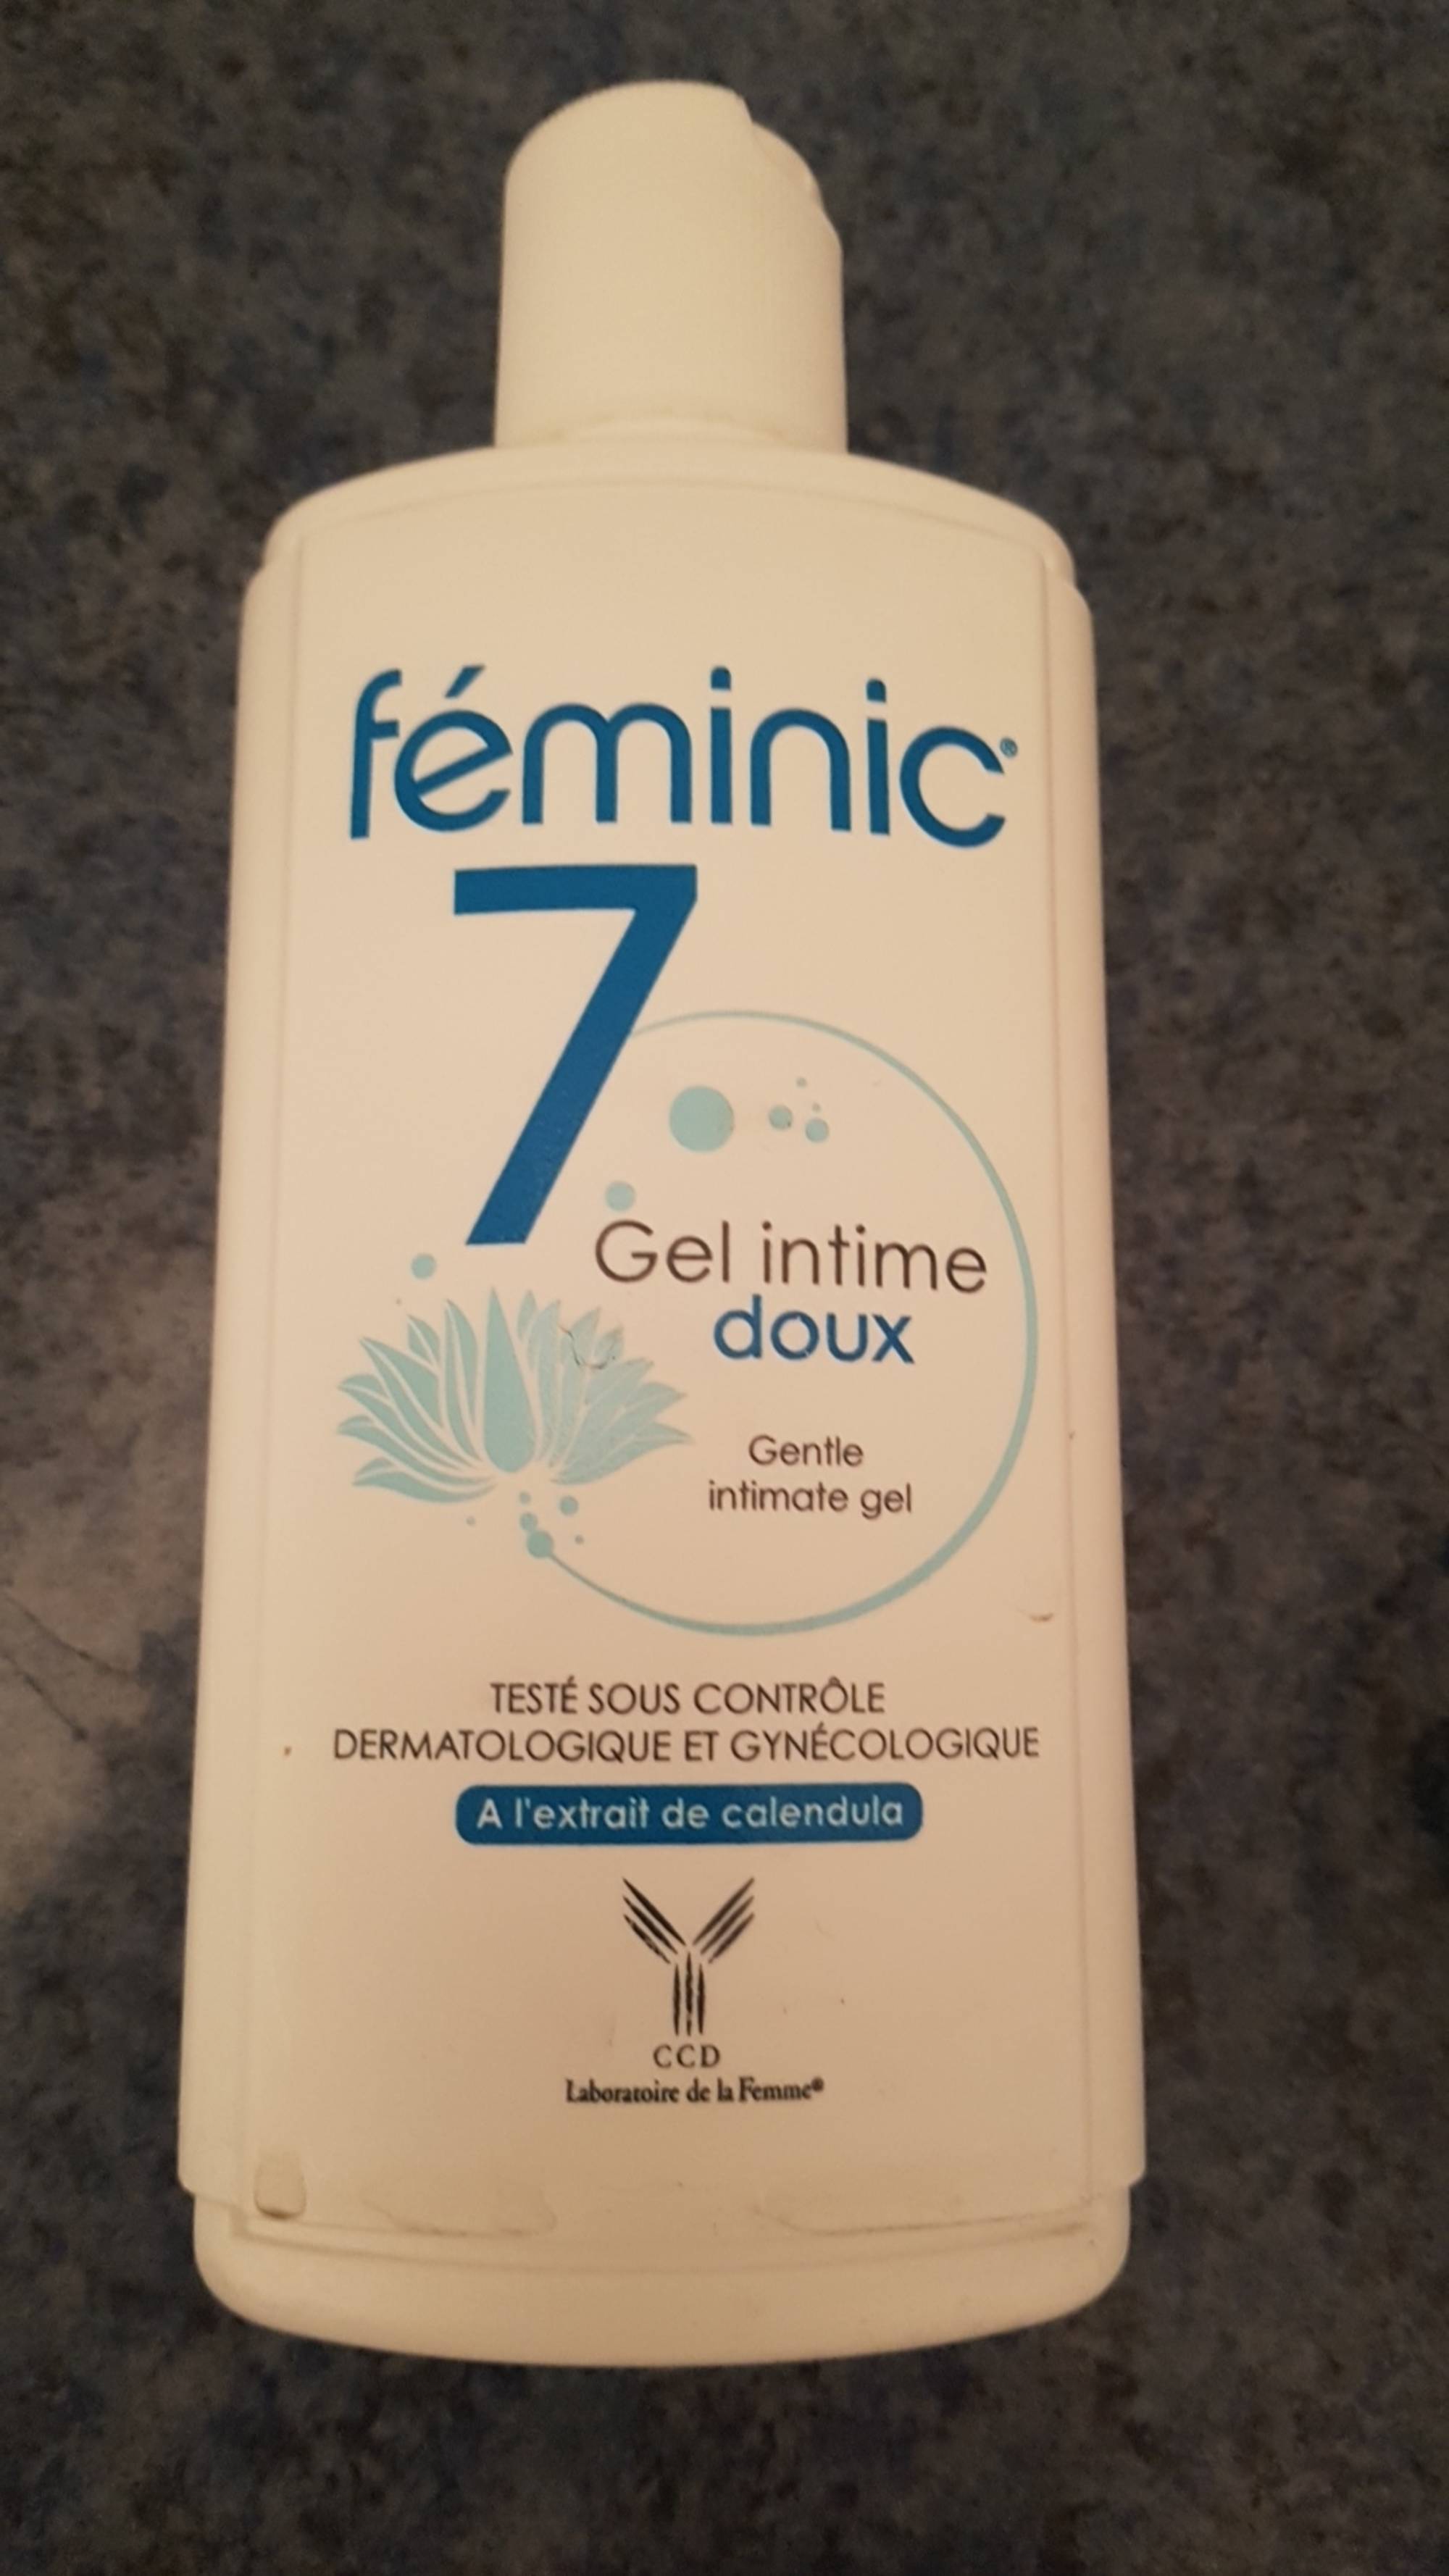 FÉMINIC - Féminic 7 - Gel intime doux à l'extrait de calendula